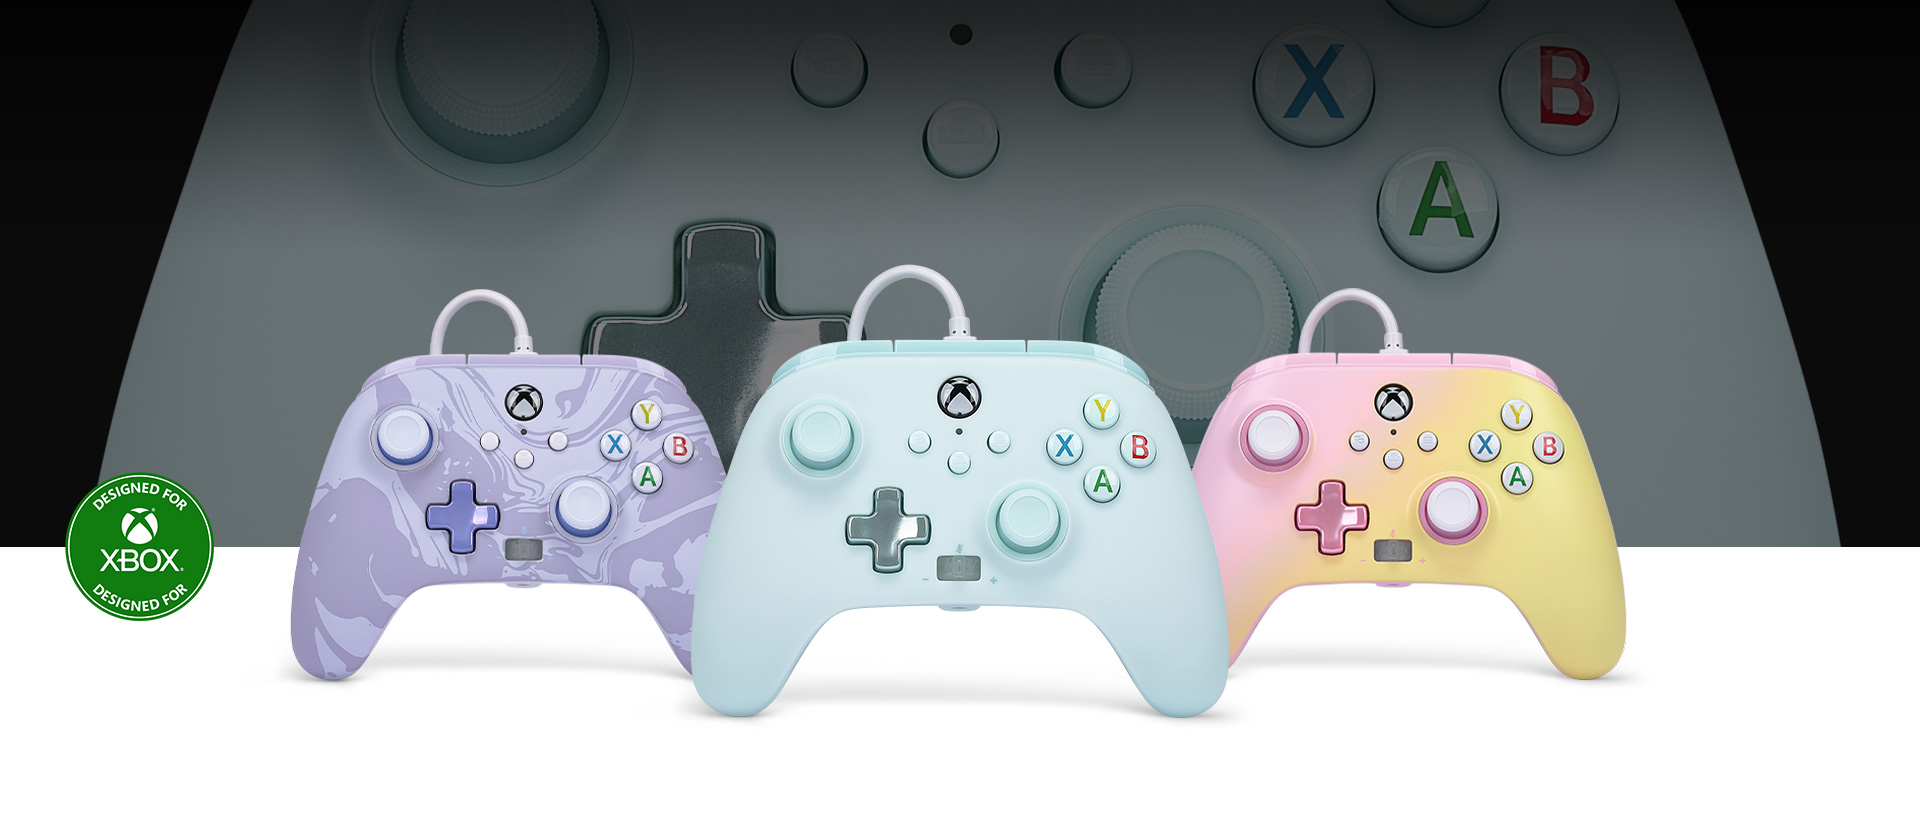 Logo Zaprojektowane dla Xbox, kontroler w kolorze błękitu cukrowej waty przed znajdującymi się po obu jego stronach kontrolerami w kolorze wojskowej purpury i oranżadowego różu